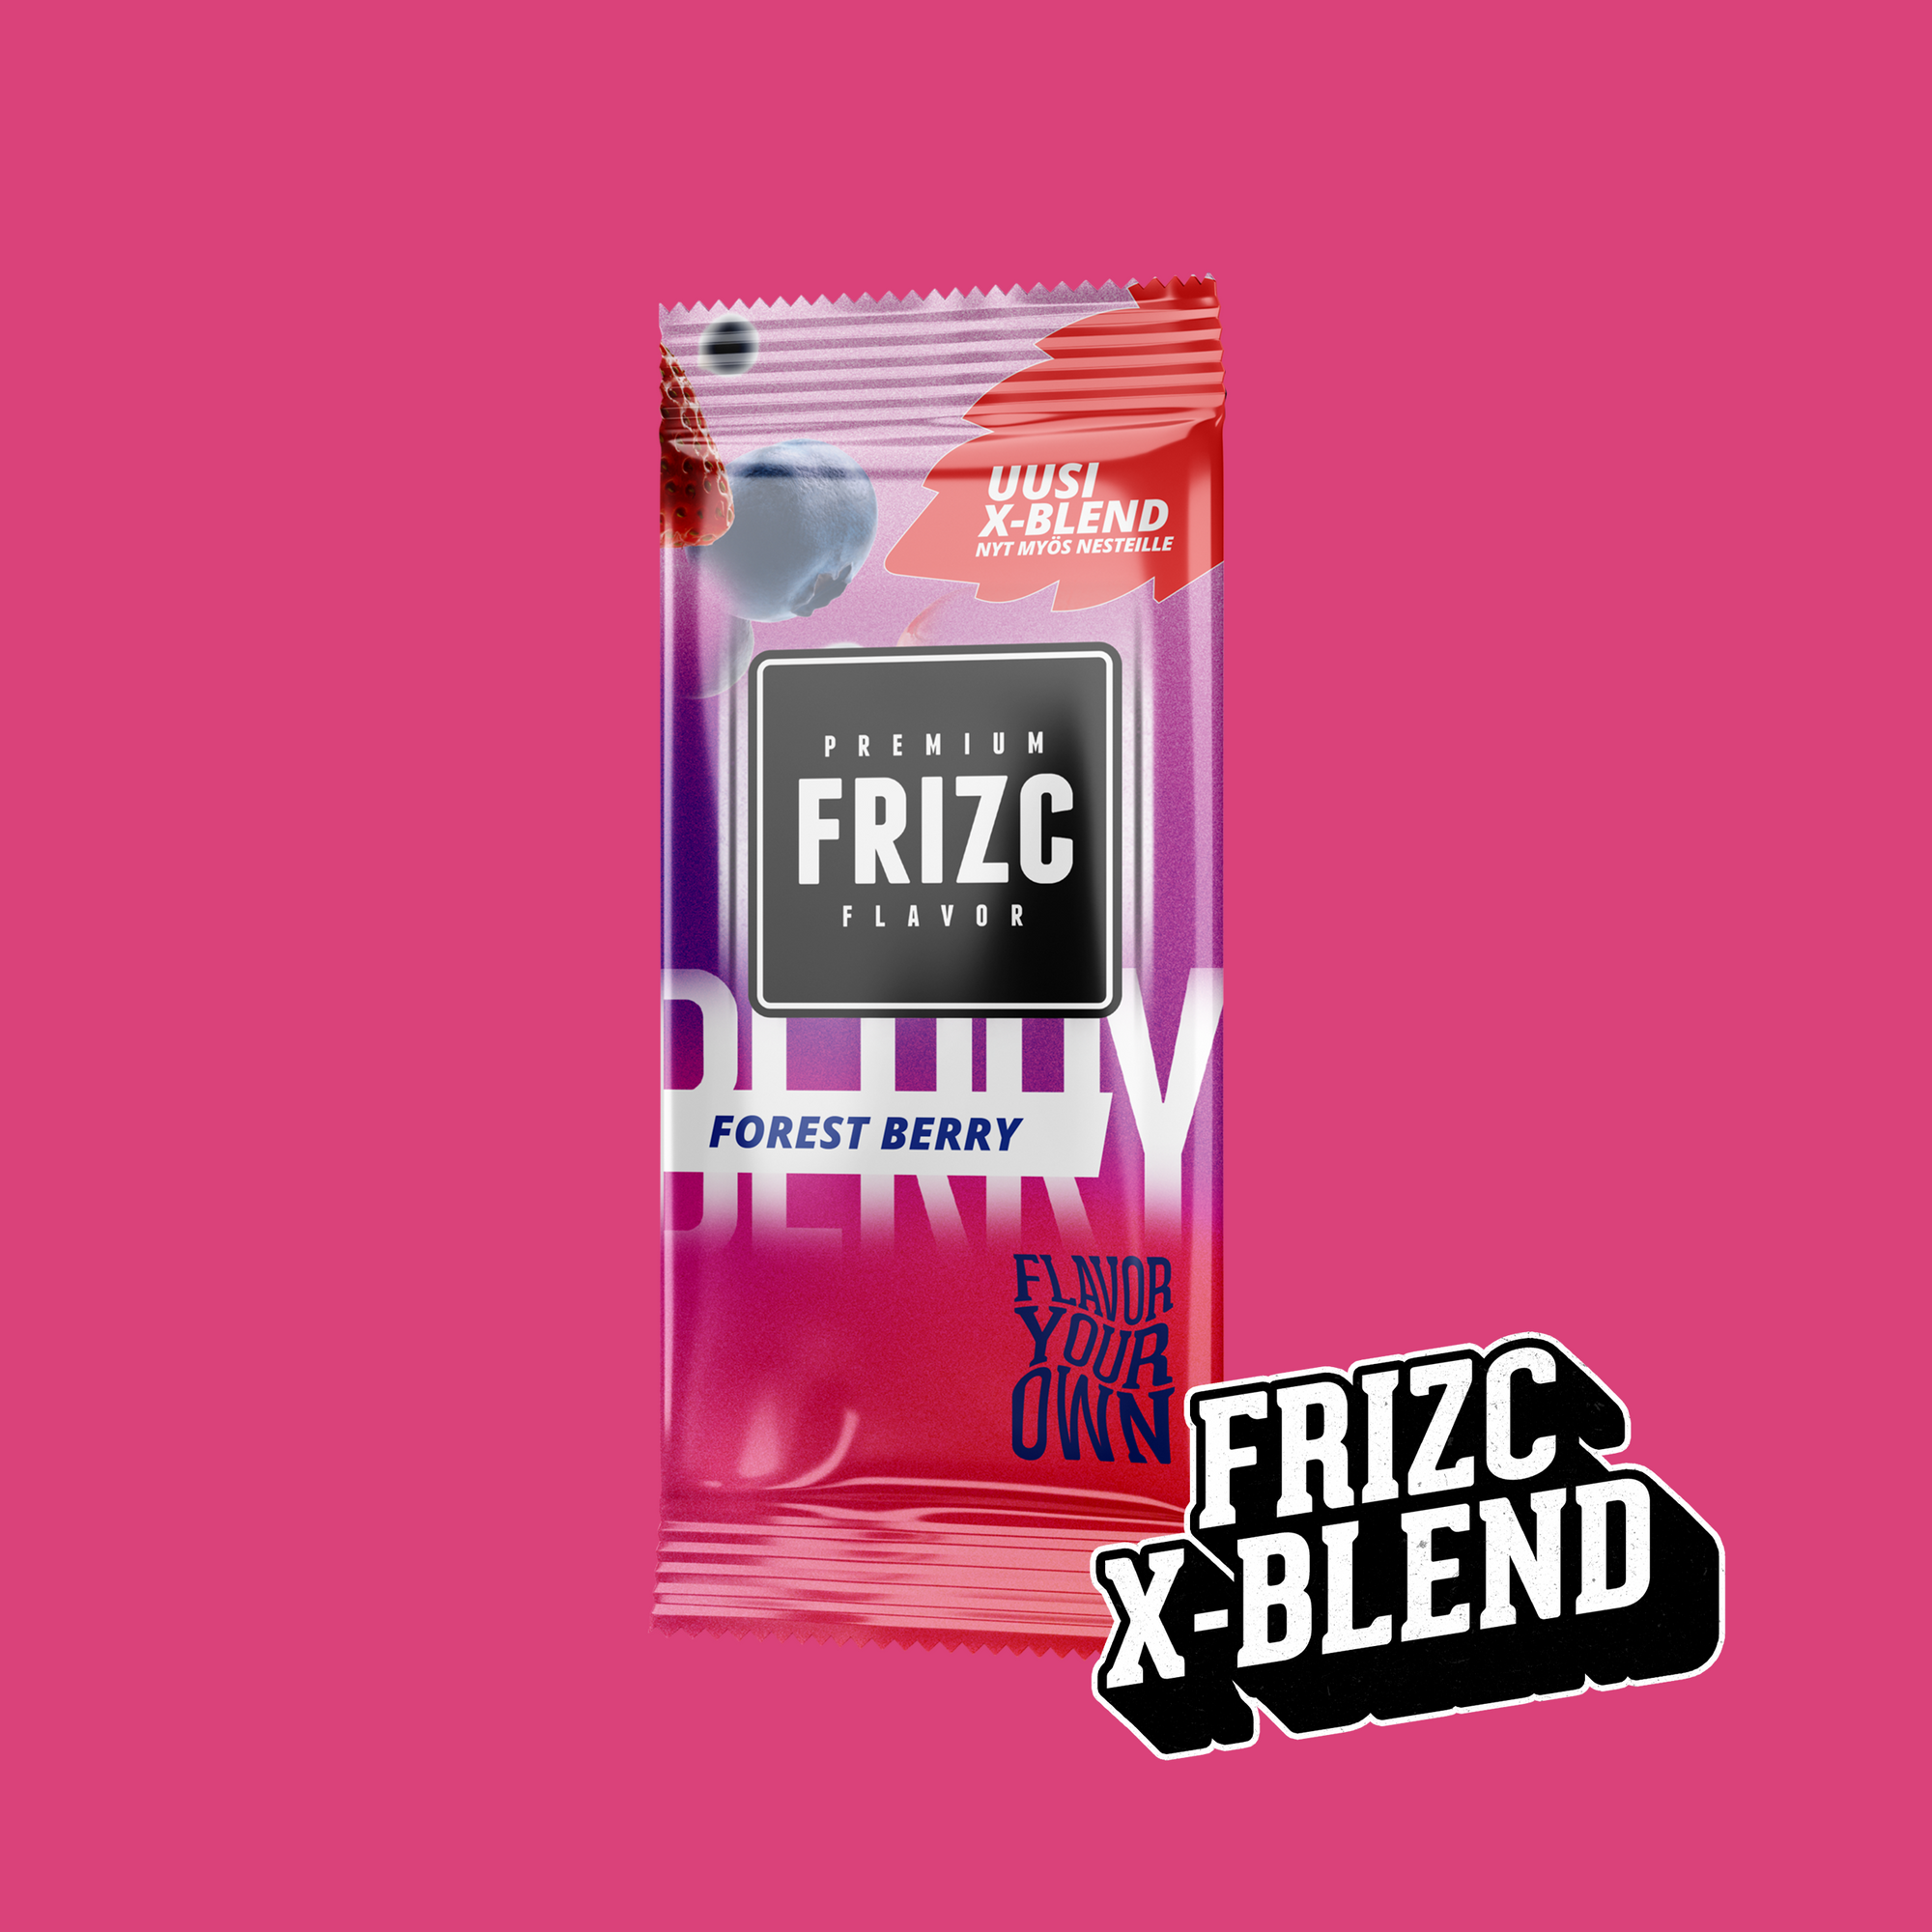 Frizc Forest Berry X-Blend 25pcs